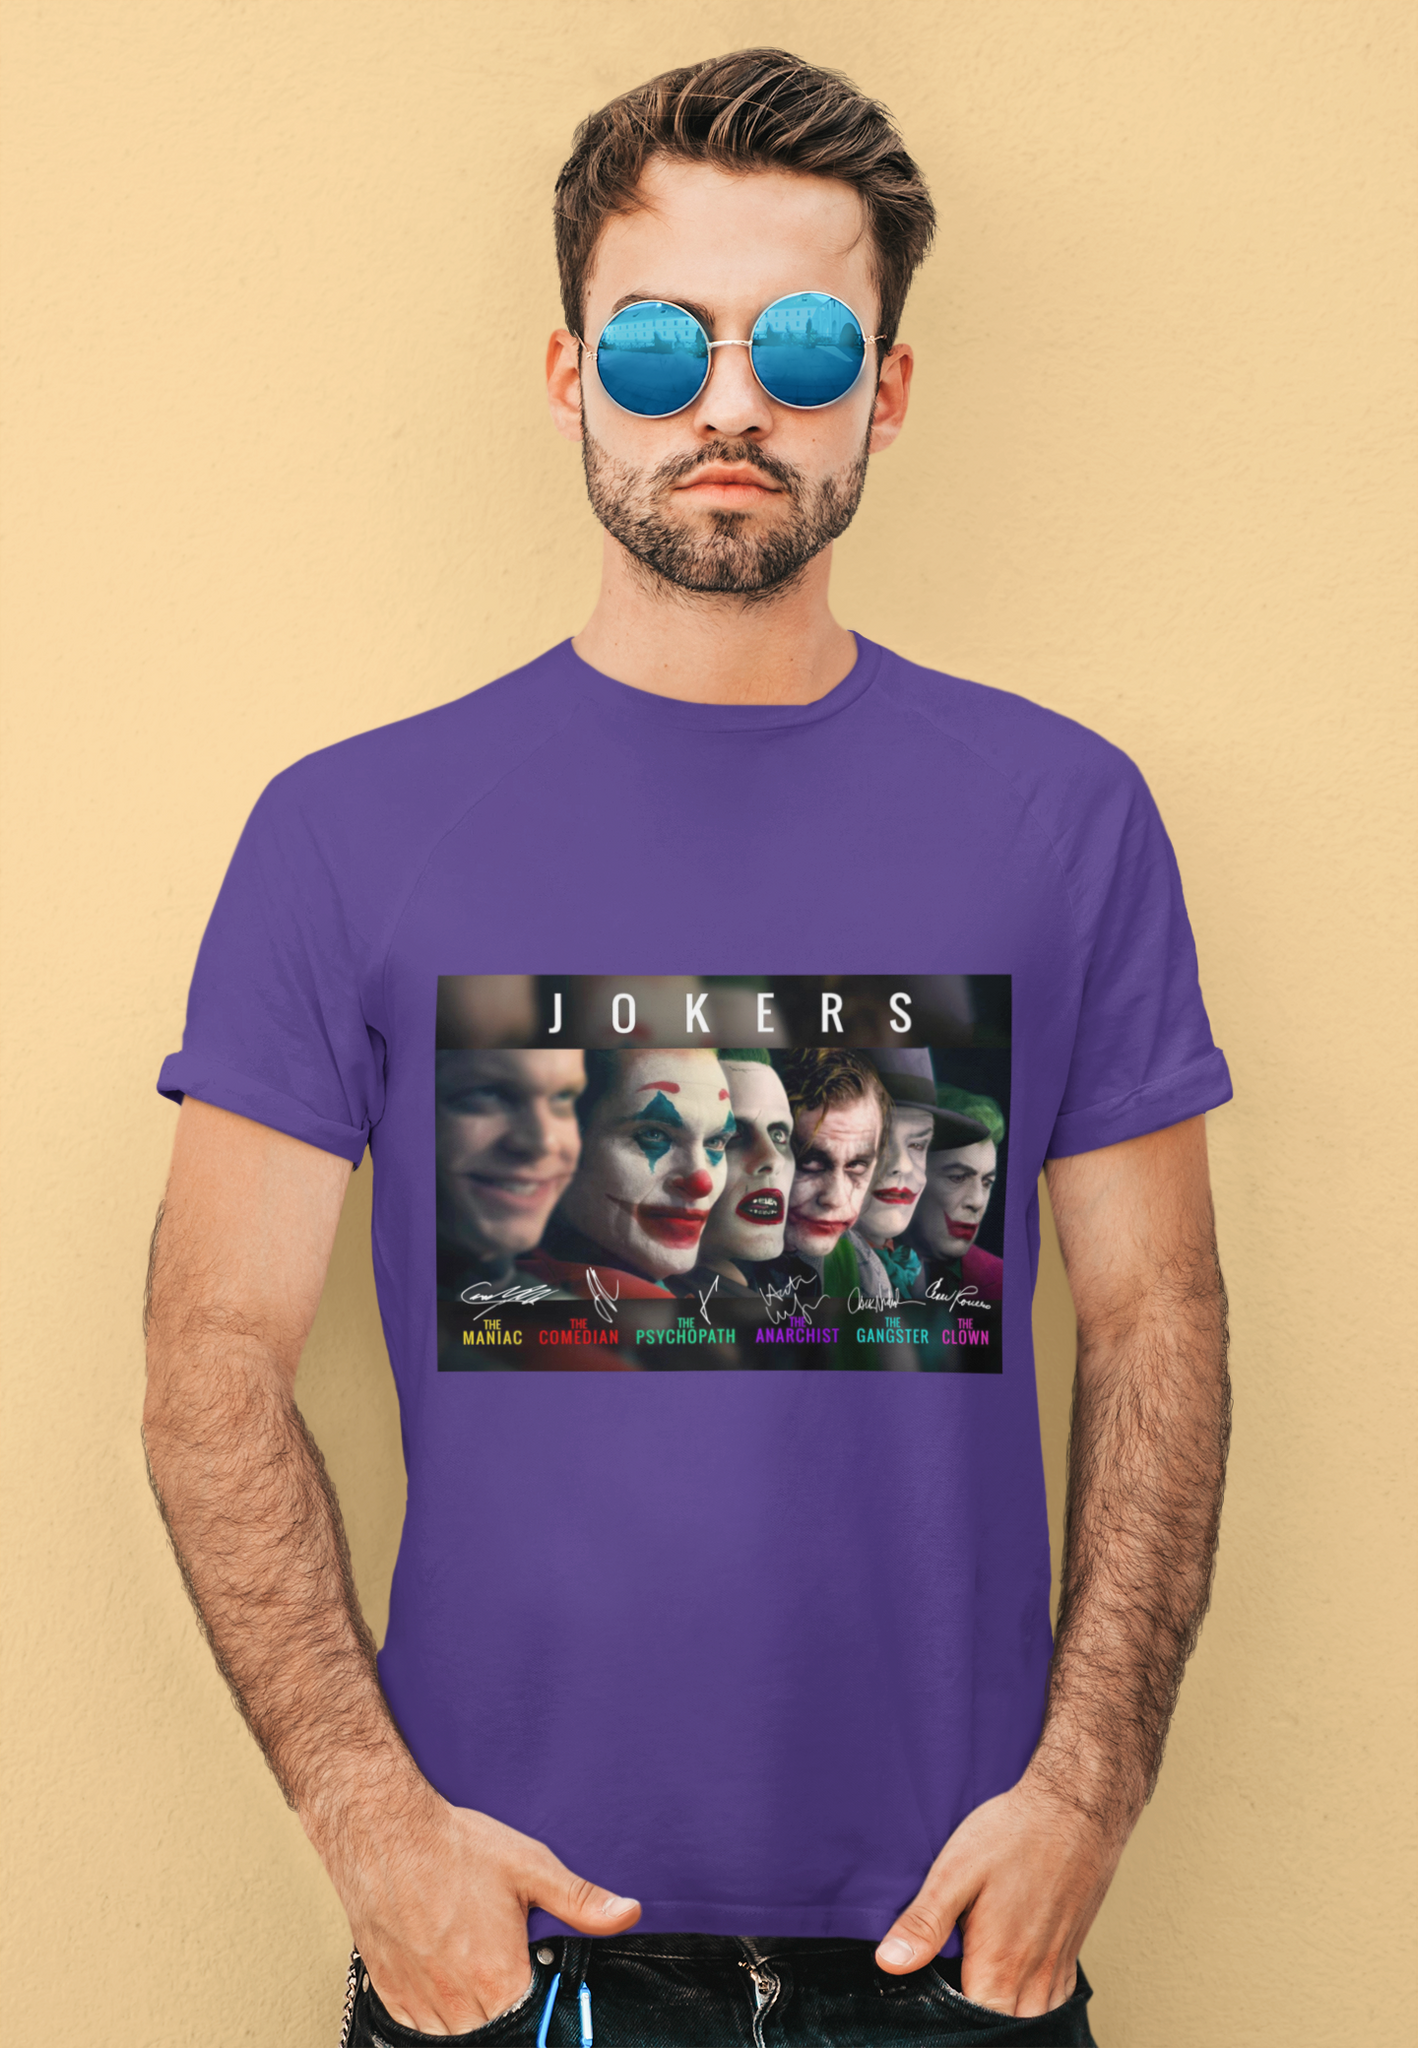 Joker T Shirt, Jokers The Maniac Comedian Psychopath Anarchist Clown Gangster Tshirt, Halloween Gifts